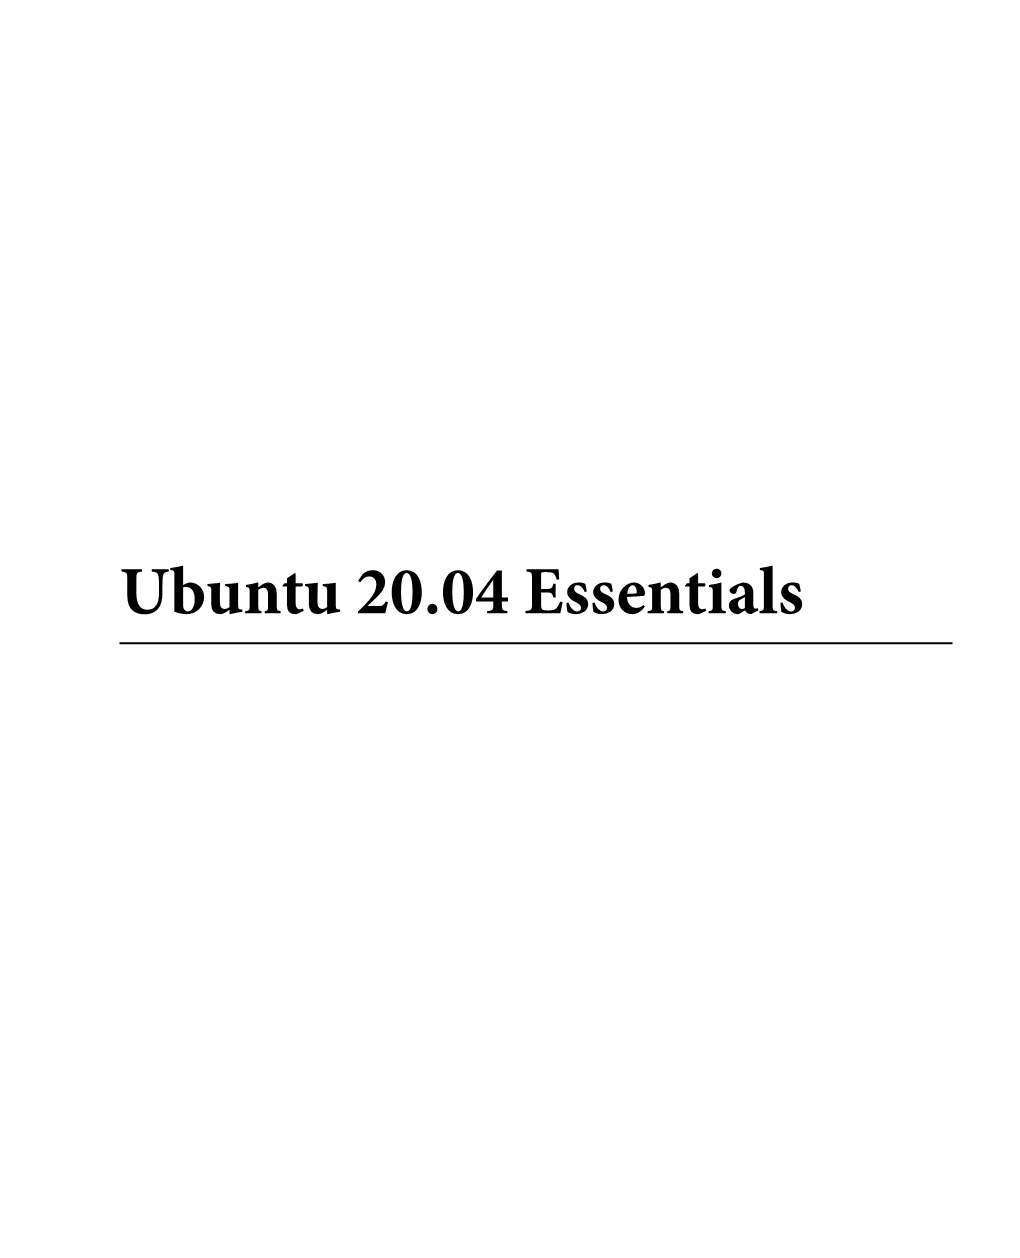 Ubuntu 20.04 Essentials Ubuntu 20.04 Essentials ISBN-13: 978-1-951442-05-7 © 2020 Neil Smyth / Payload Media, Inc